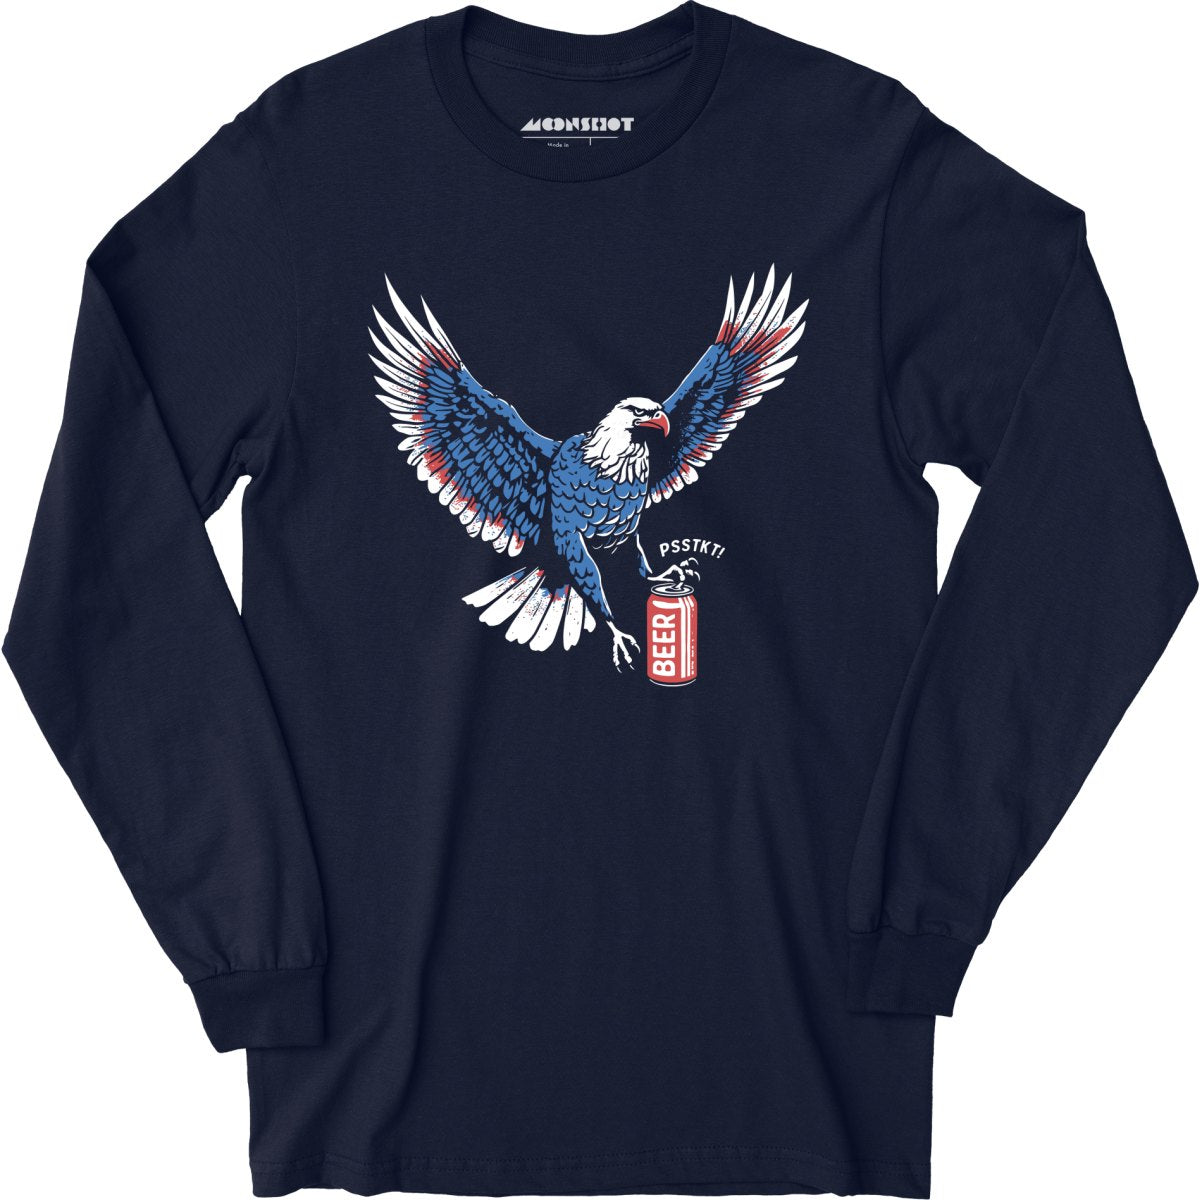 Psstkt Eagle - Long Sleeve T-Shirt